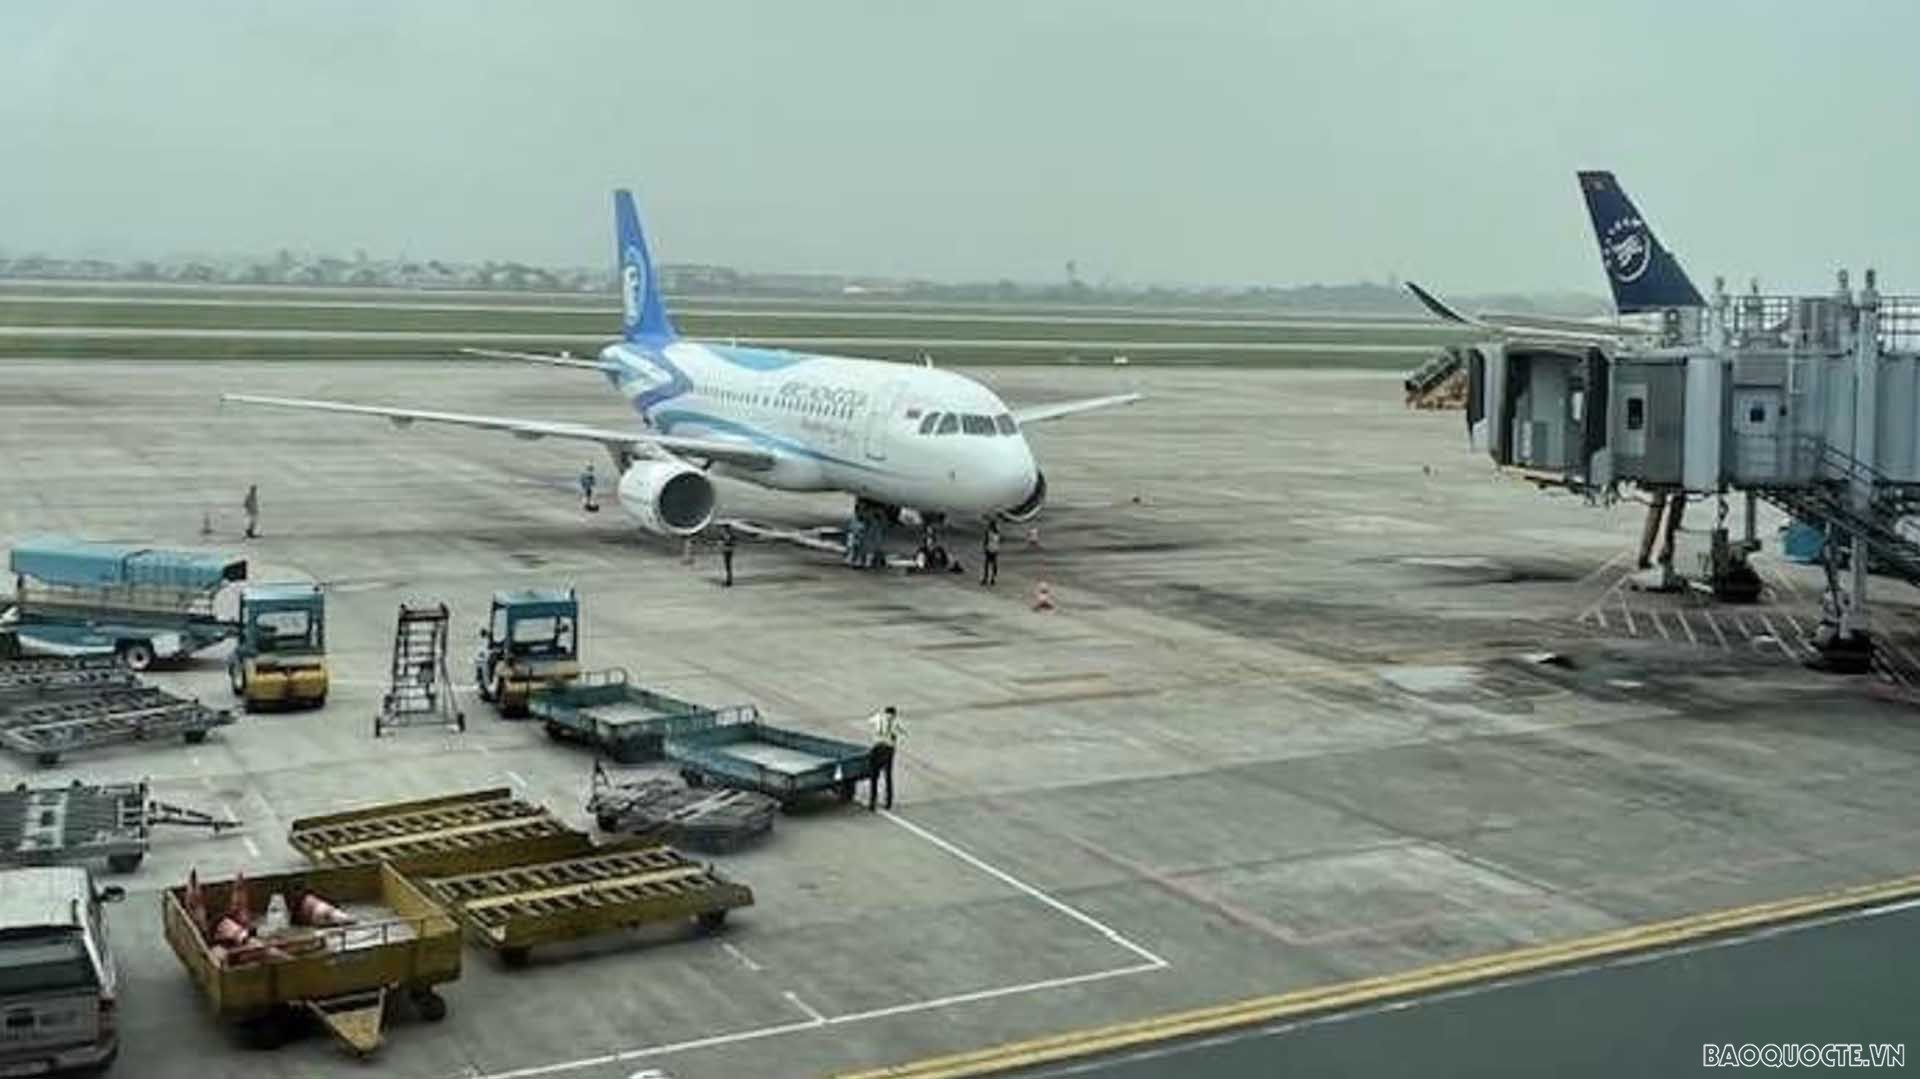 Chuyến bay chở hơn 130 du khách Mông Cổ hạ cánh tại Nội Bài, bắt đầu tour du lịch đầu tiên từ Mông Cổ đến Việt Nam kể từ khi đại dịch Covid-19 bùng phát.